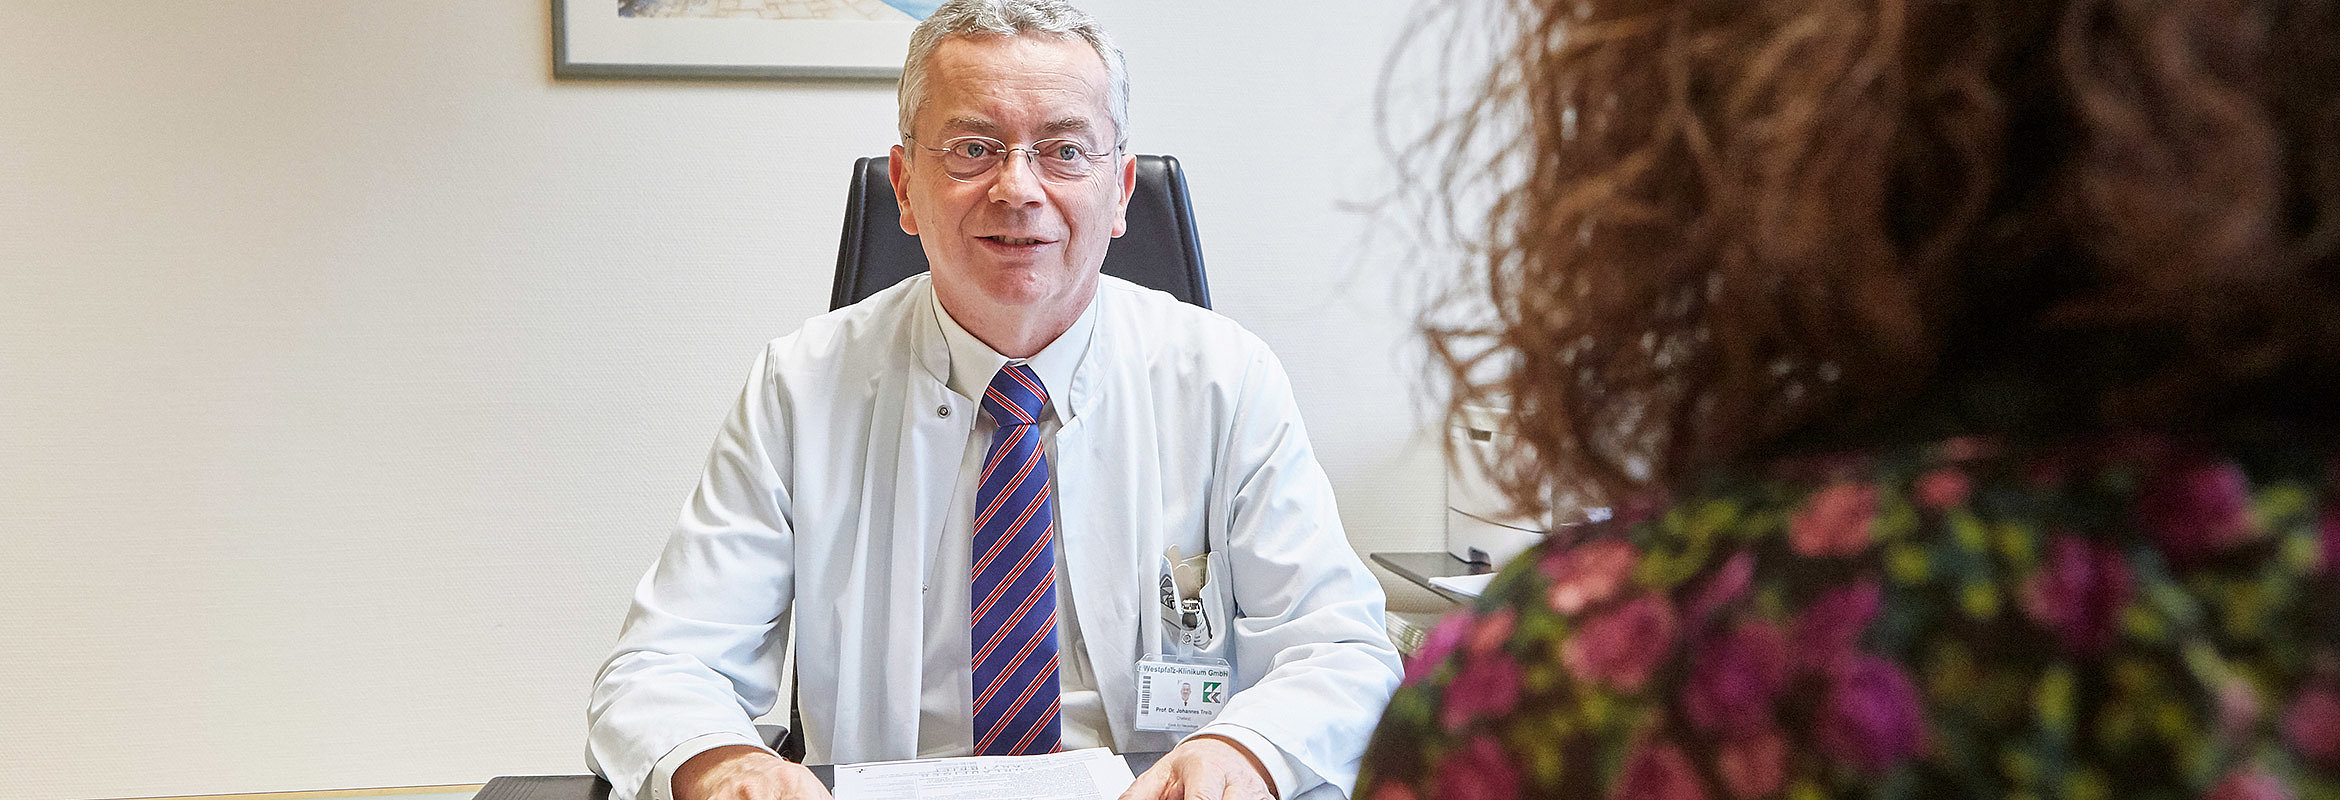 Prof. Dr. med. Johannes Treib, Chefarzt der Klinik für Neurologie in Kaiserslautern, an seinem Schreibtisch